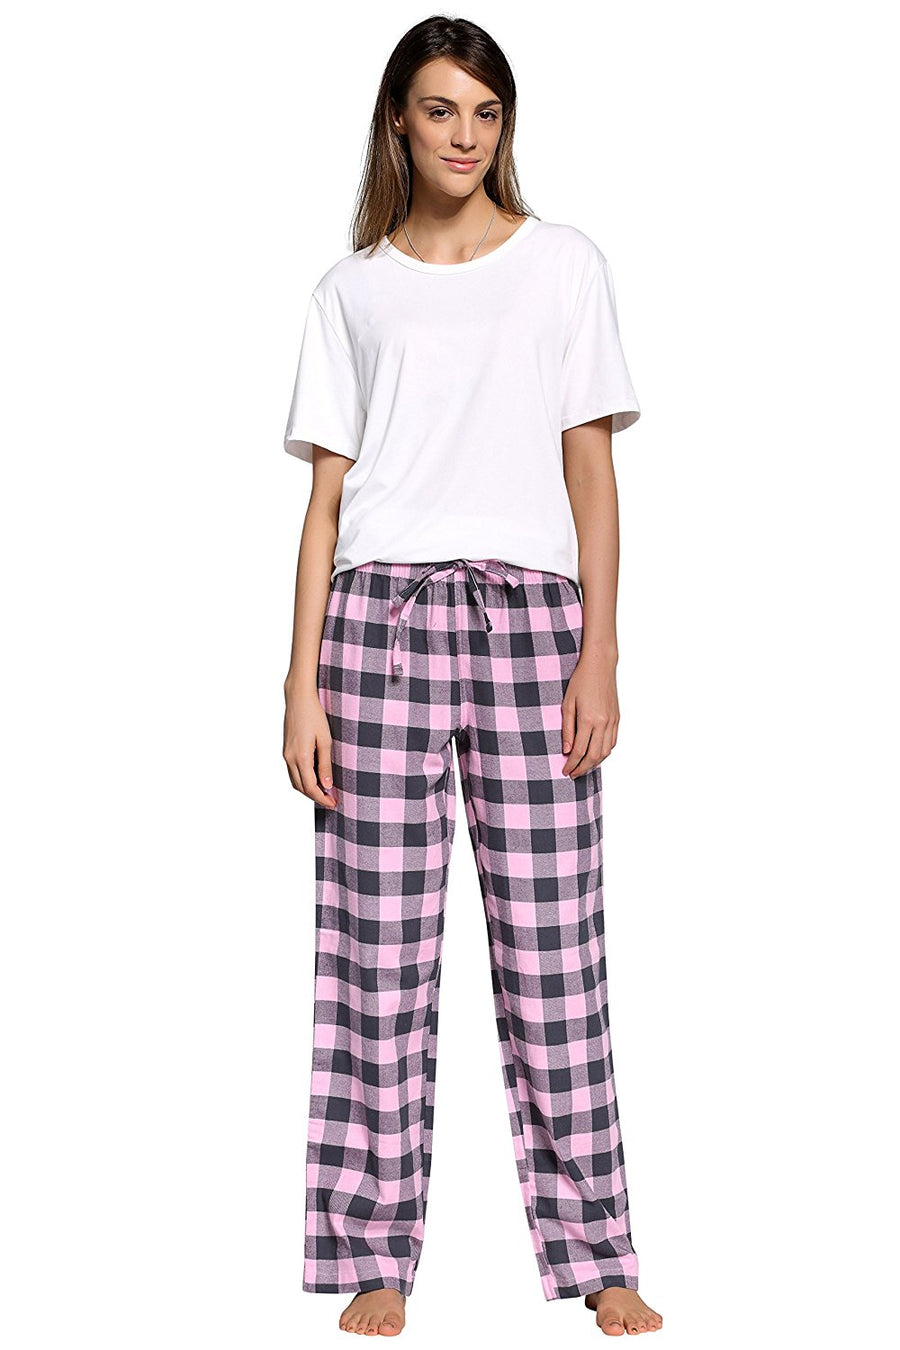 CYZ Women's 100% Cotton Super Soft Flannel Plaid Pajama/Lounge